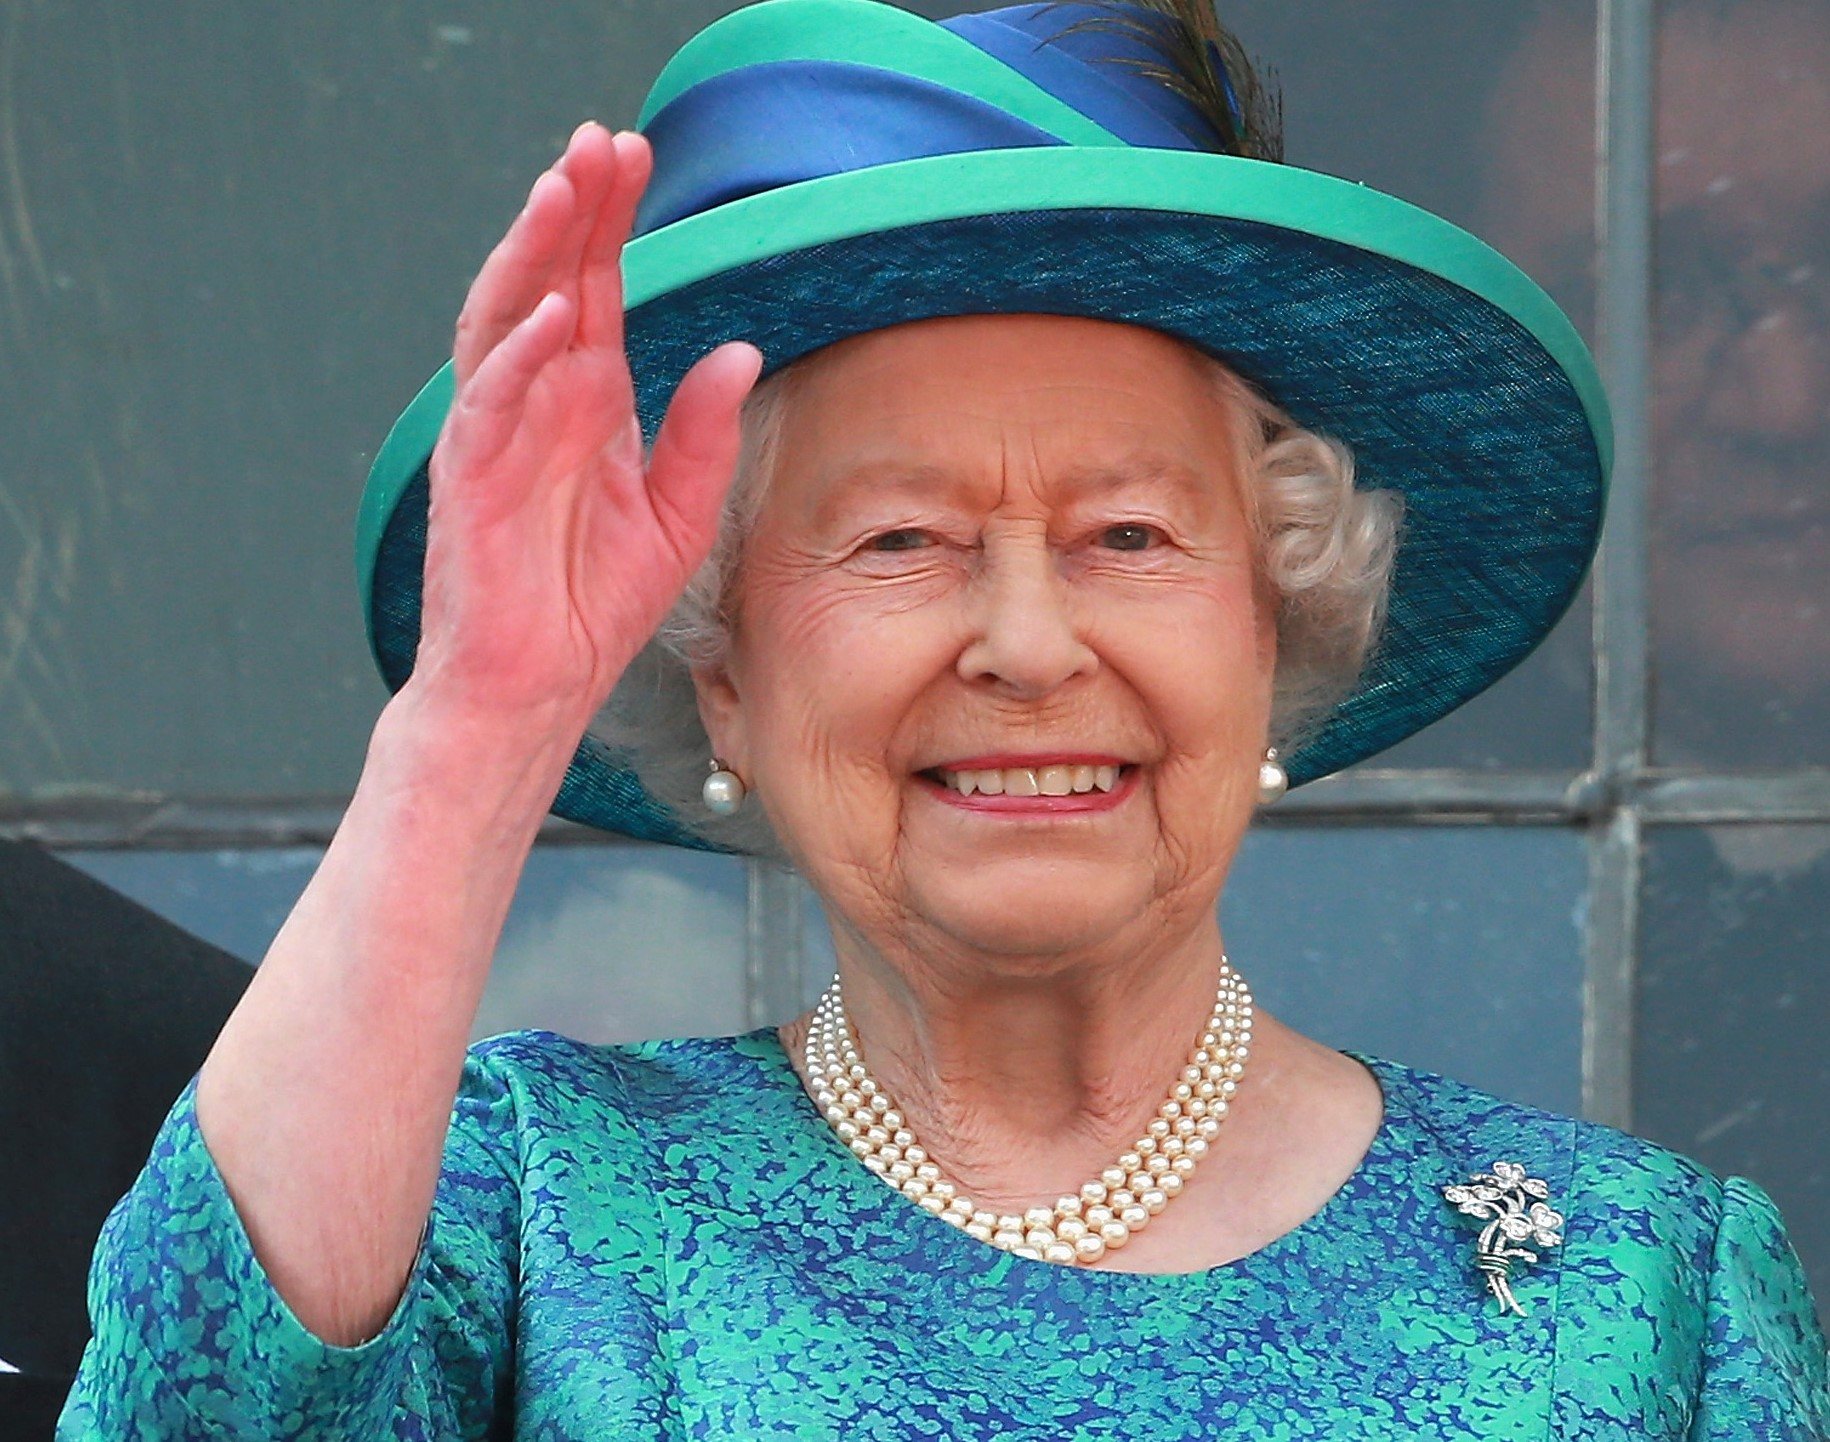 królowa Elżbieta II machając